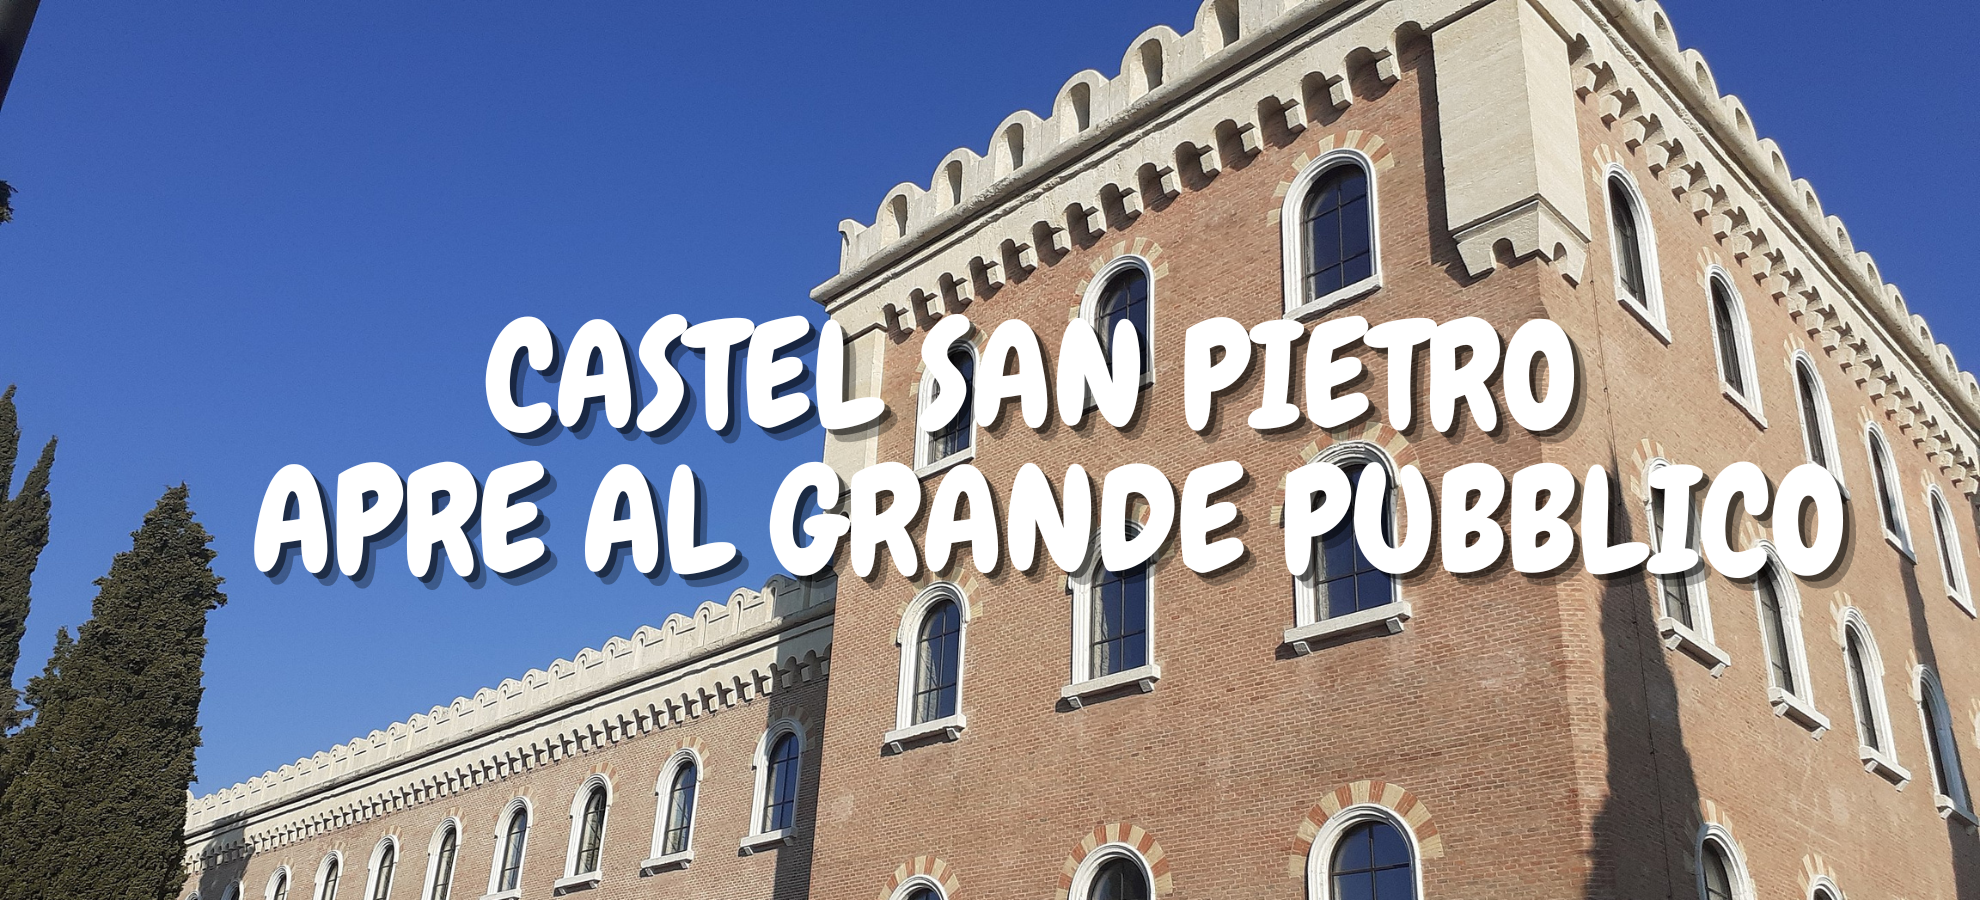 Castel San Pietro apre al grande pubblico